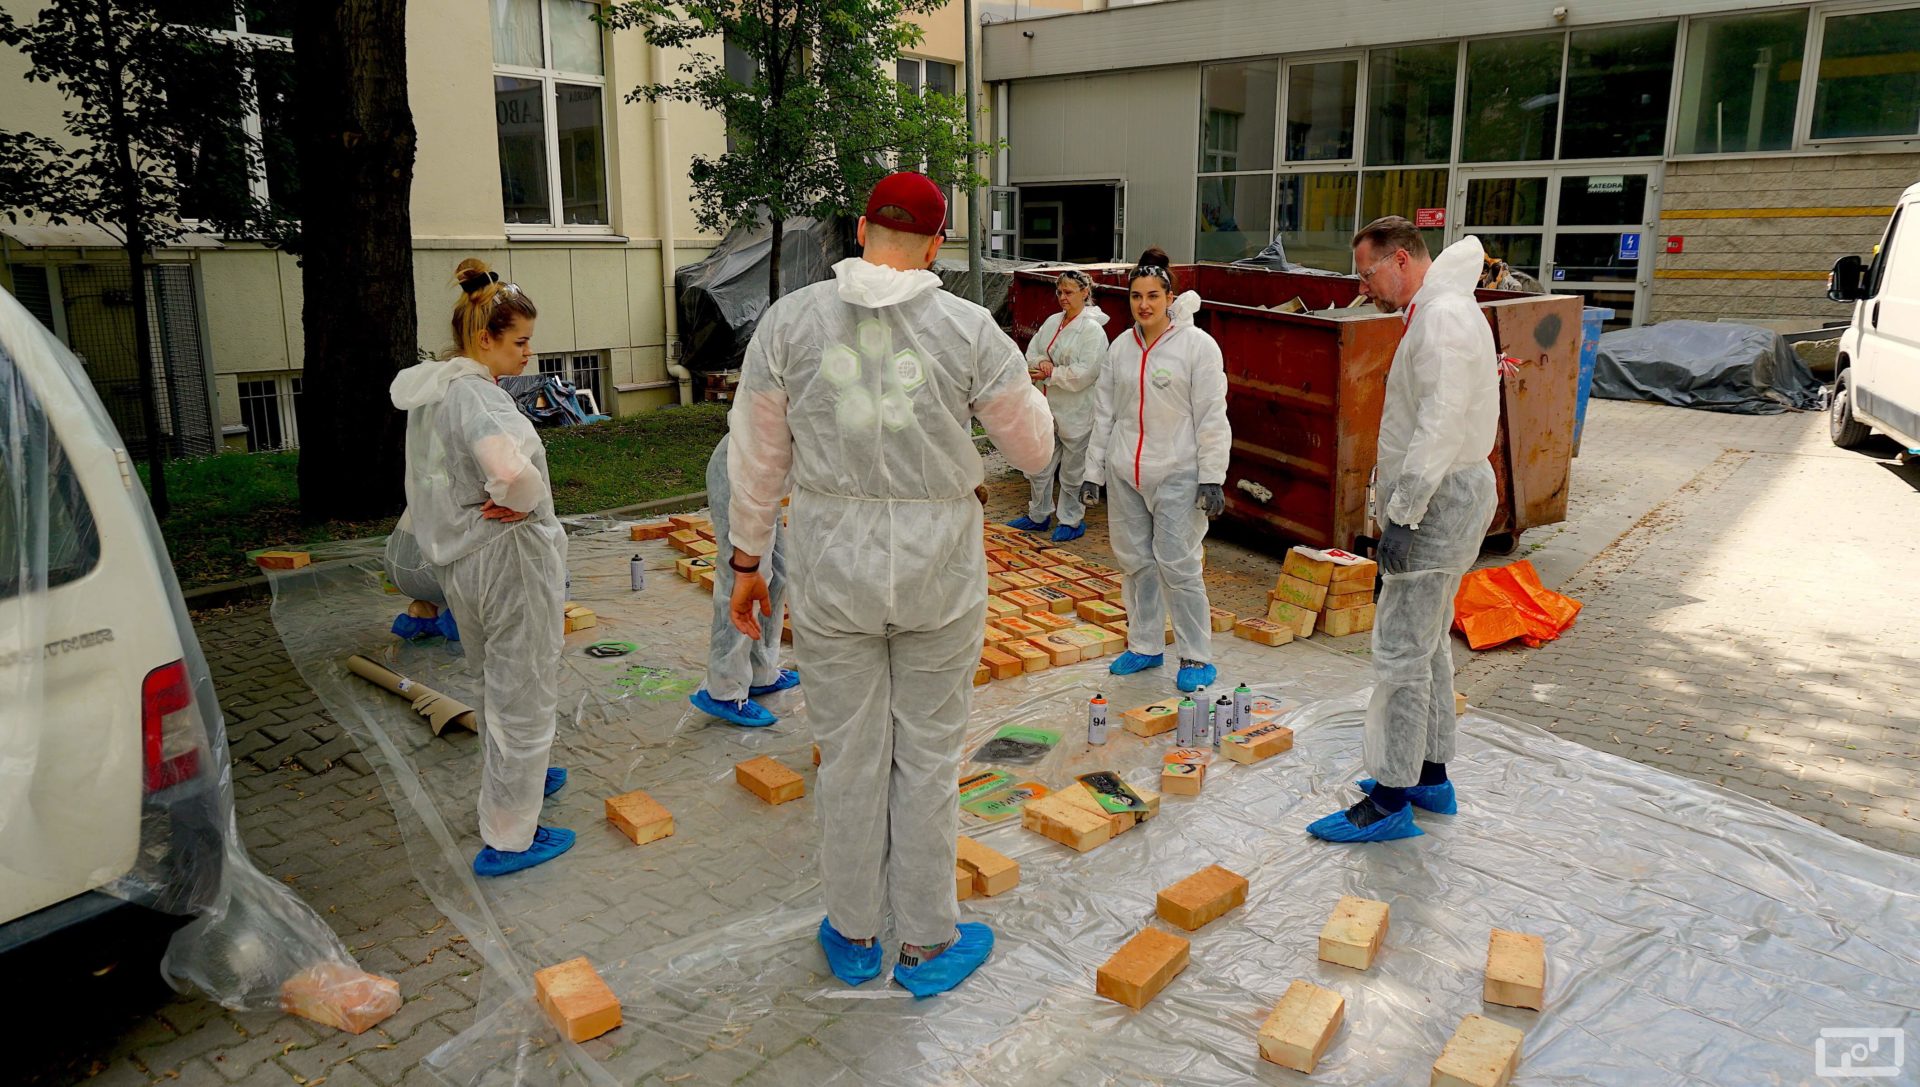 Dziekan Wydziału prof. Marek Cała oraz trzy kobiety i jeden mężczyzna stoją ubrani w stroje malarskie i oglądają pomalowane cegły. Na rozłożonej folii malarskiej leżą pomalowane cegły oraz spraye.